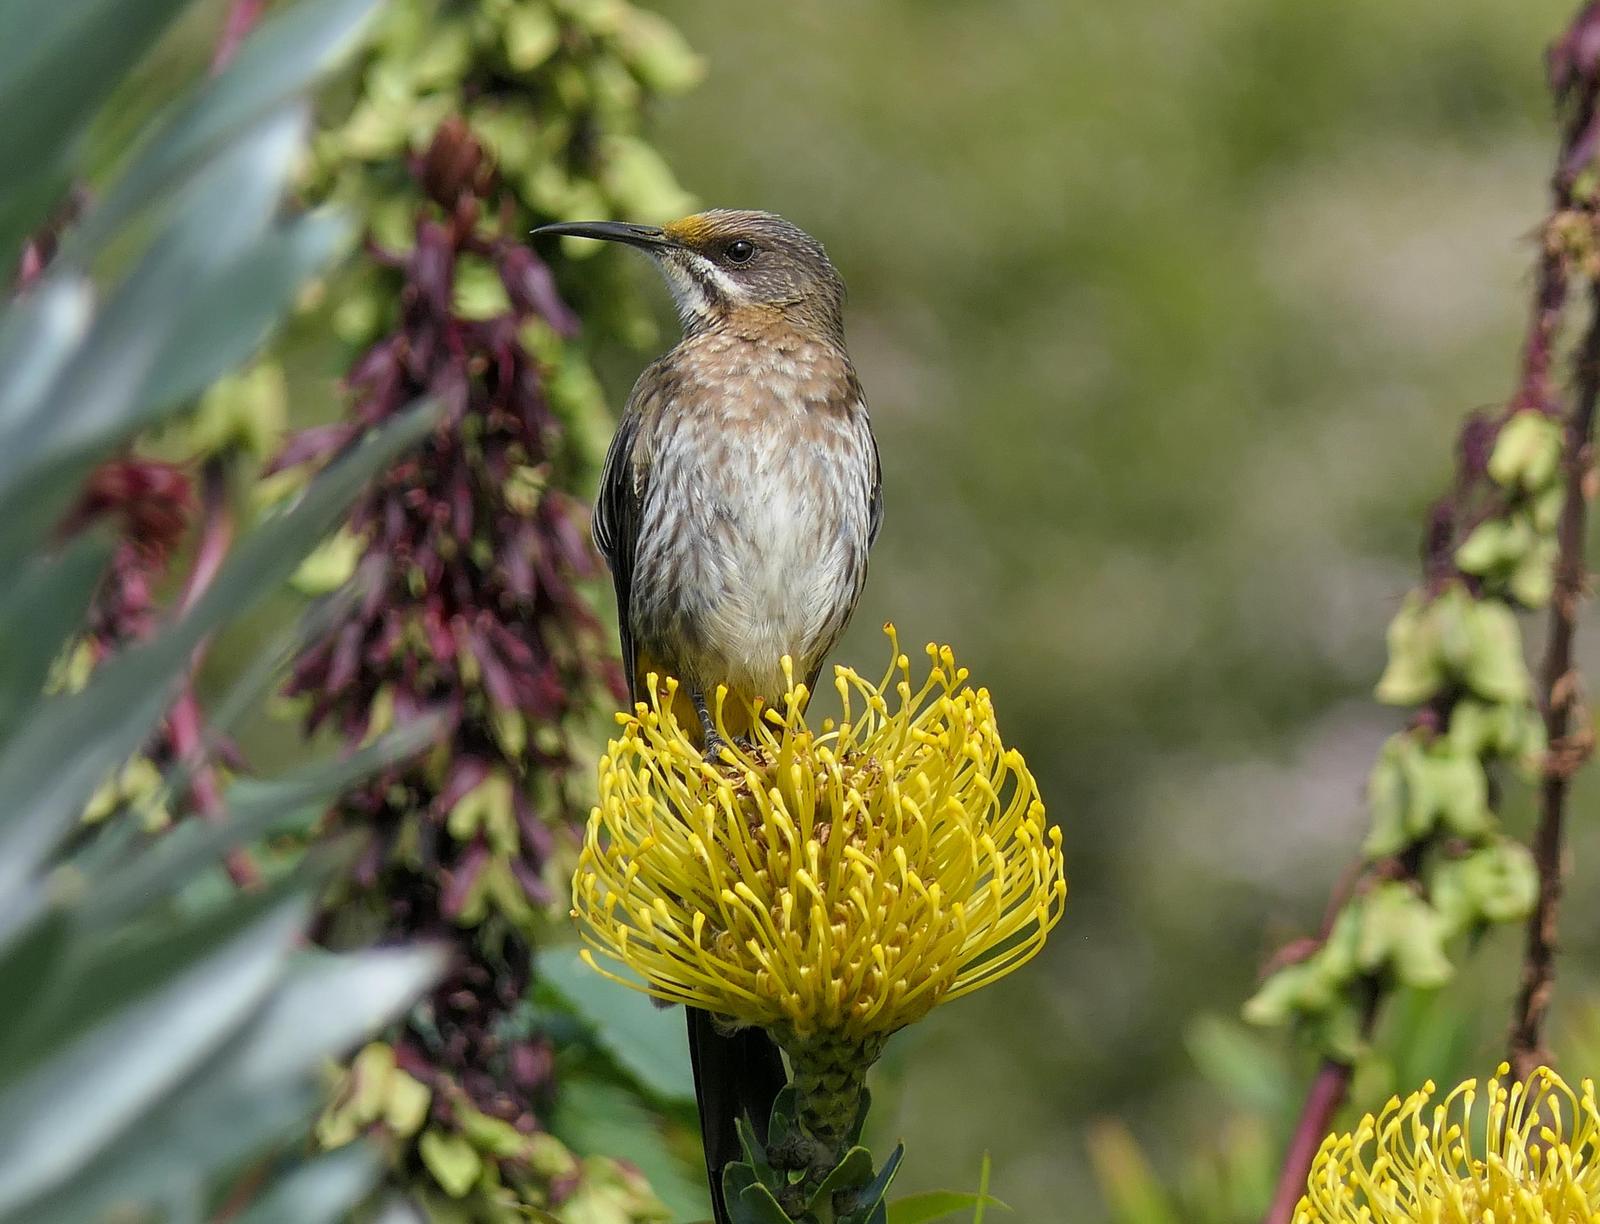 Cape Sugarbird Photo by Randy Siebert